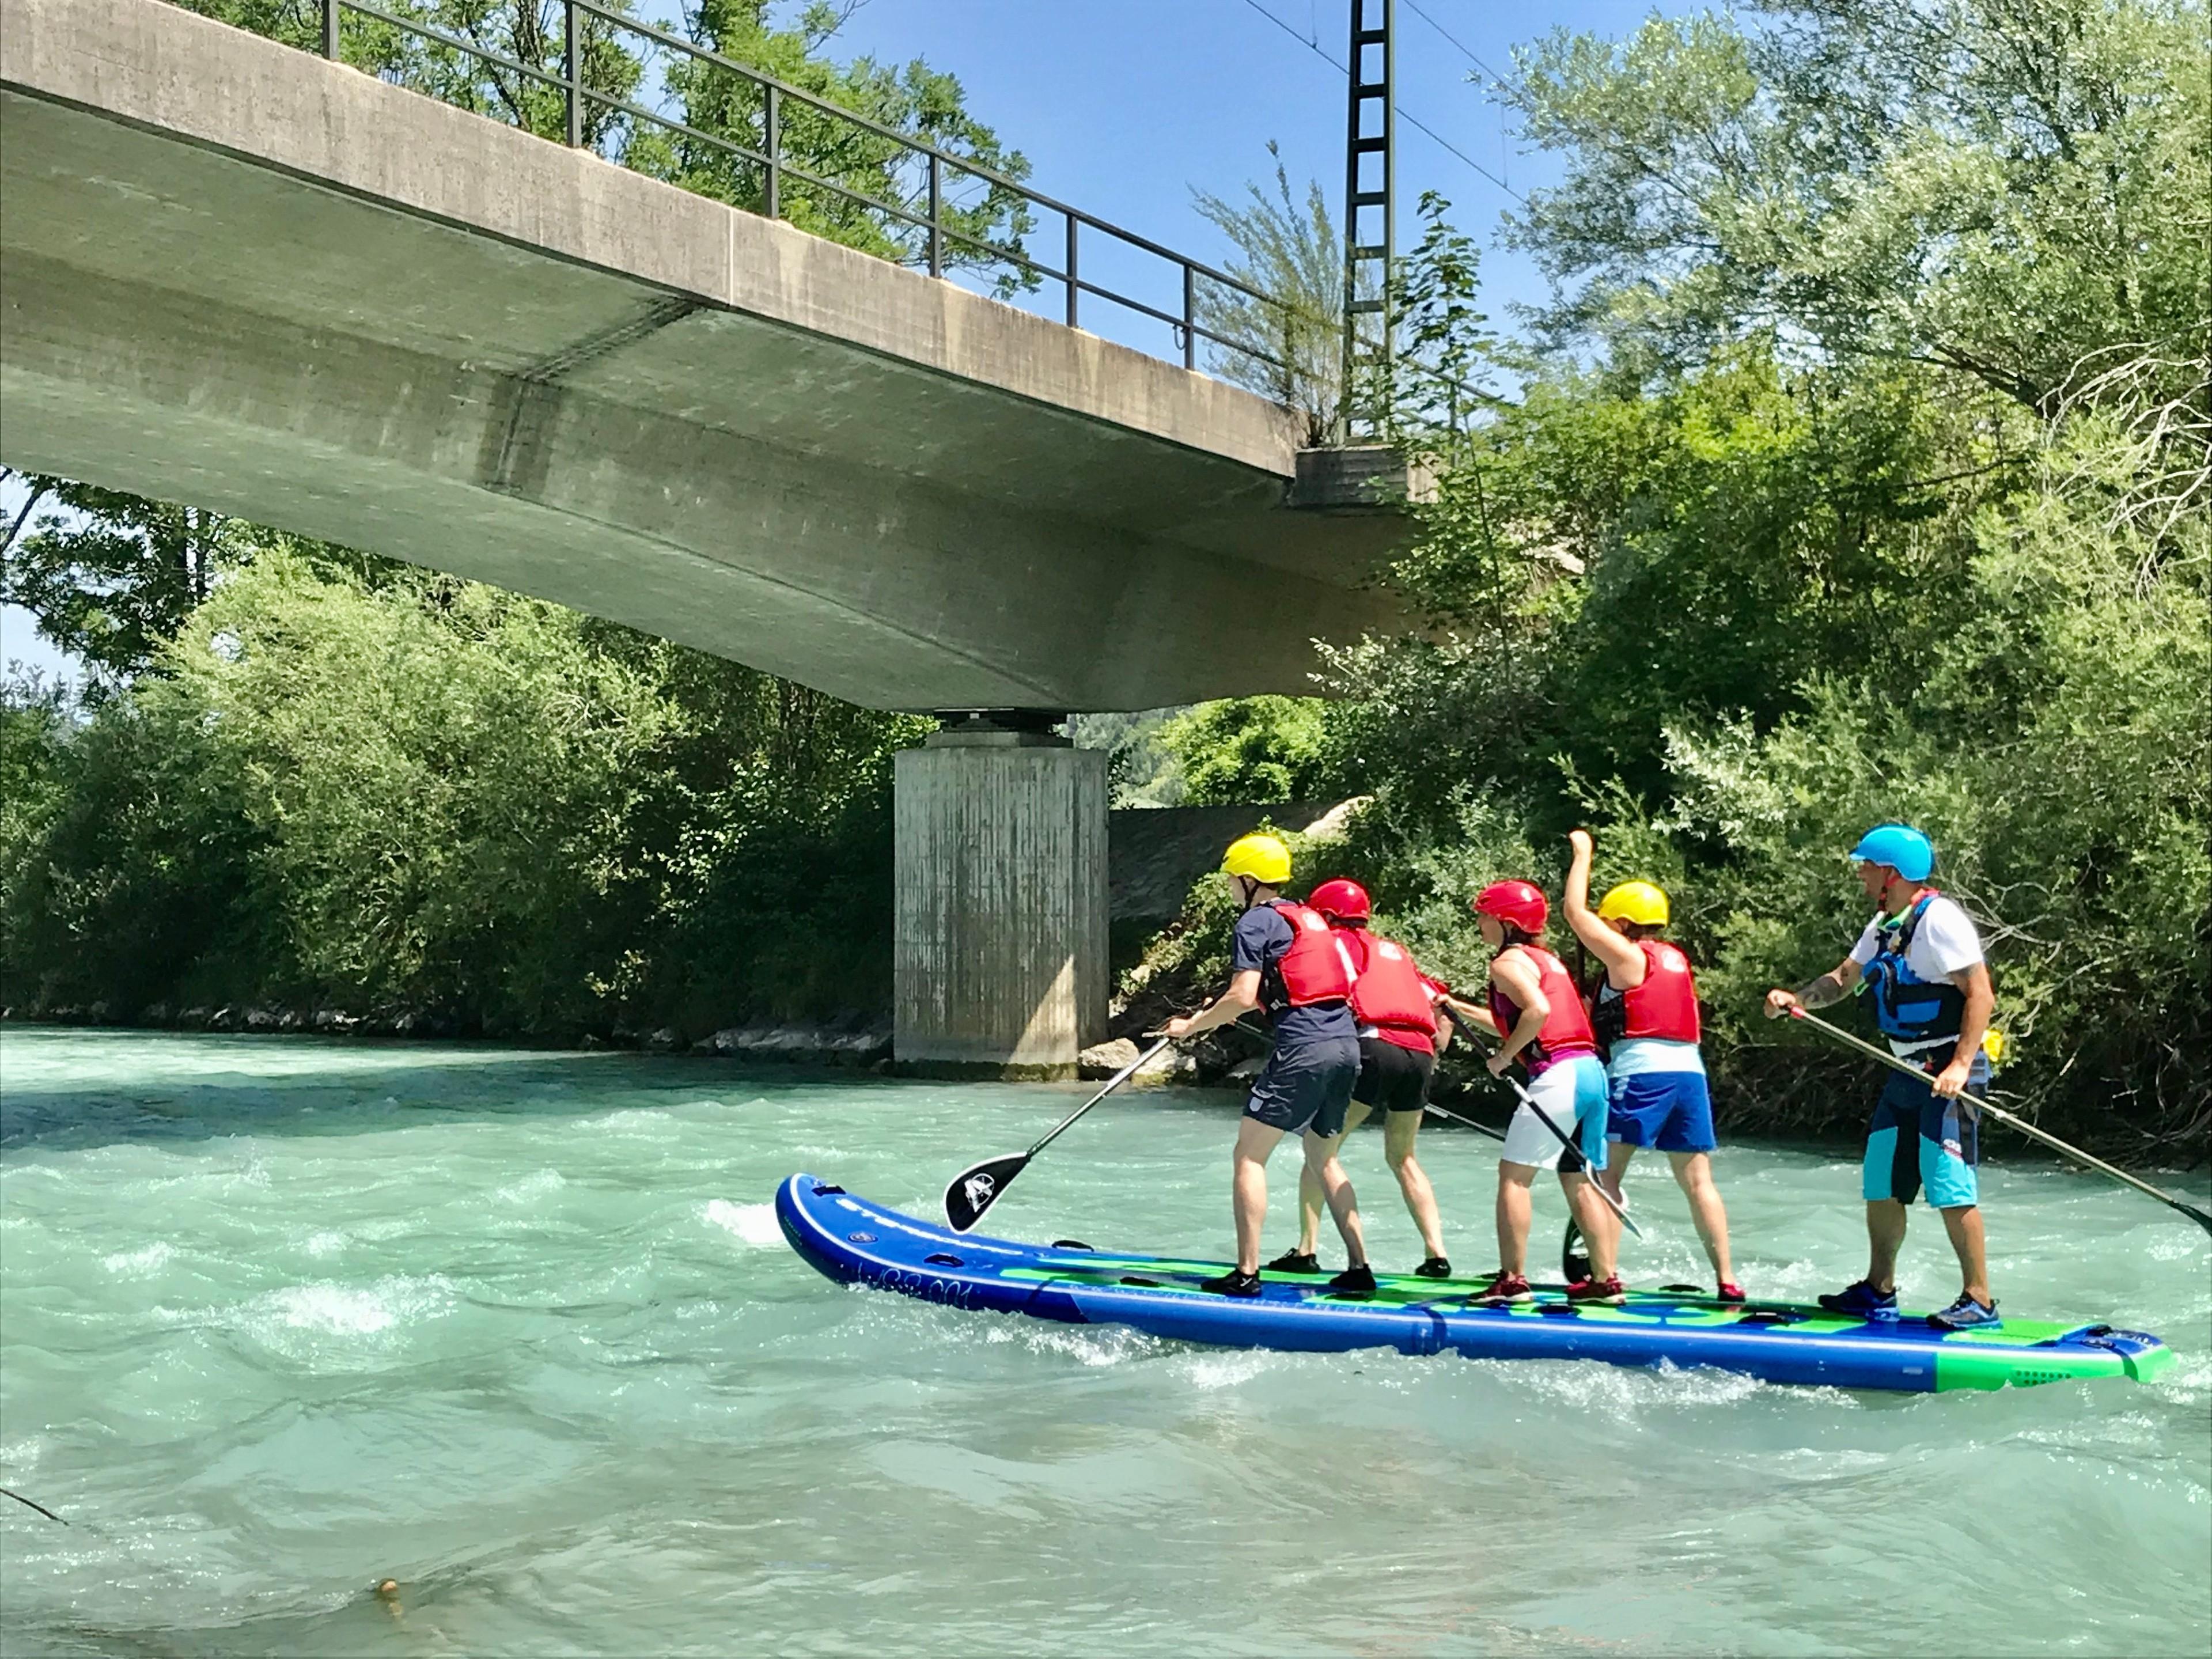 Eine Gruppe Menschen steht auf einem Maxi-SUP-Board und paddelt auf einem Fluss unter einer Brücke hindurch